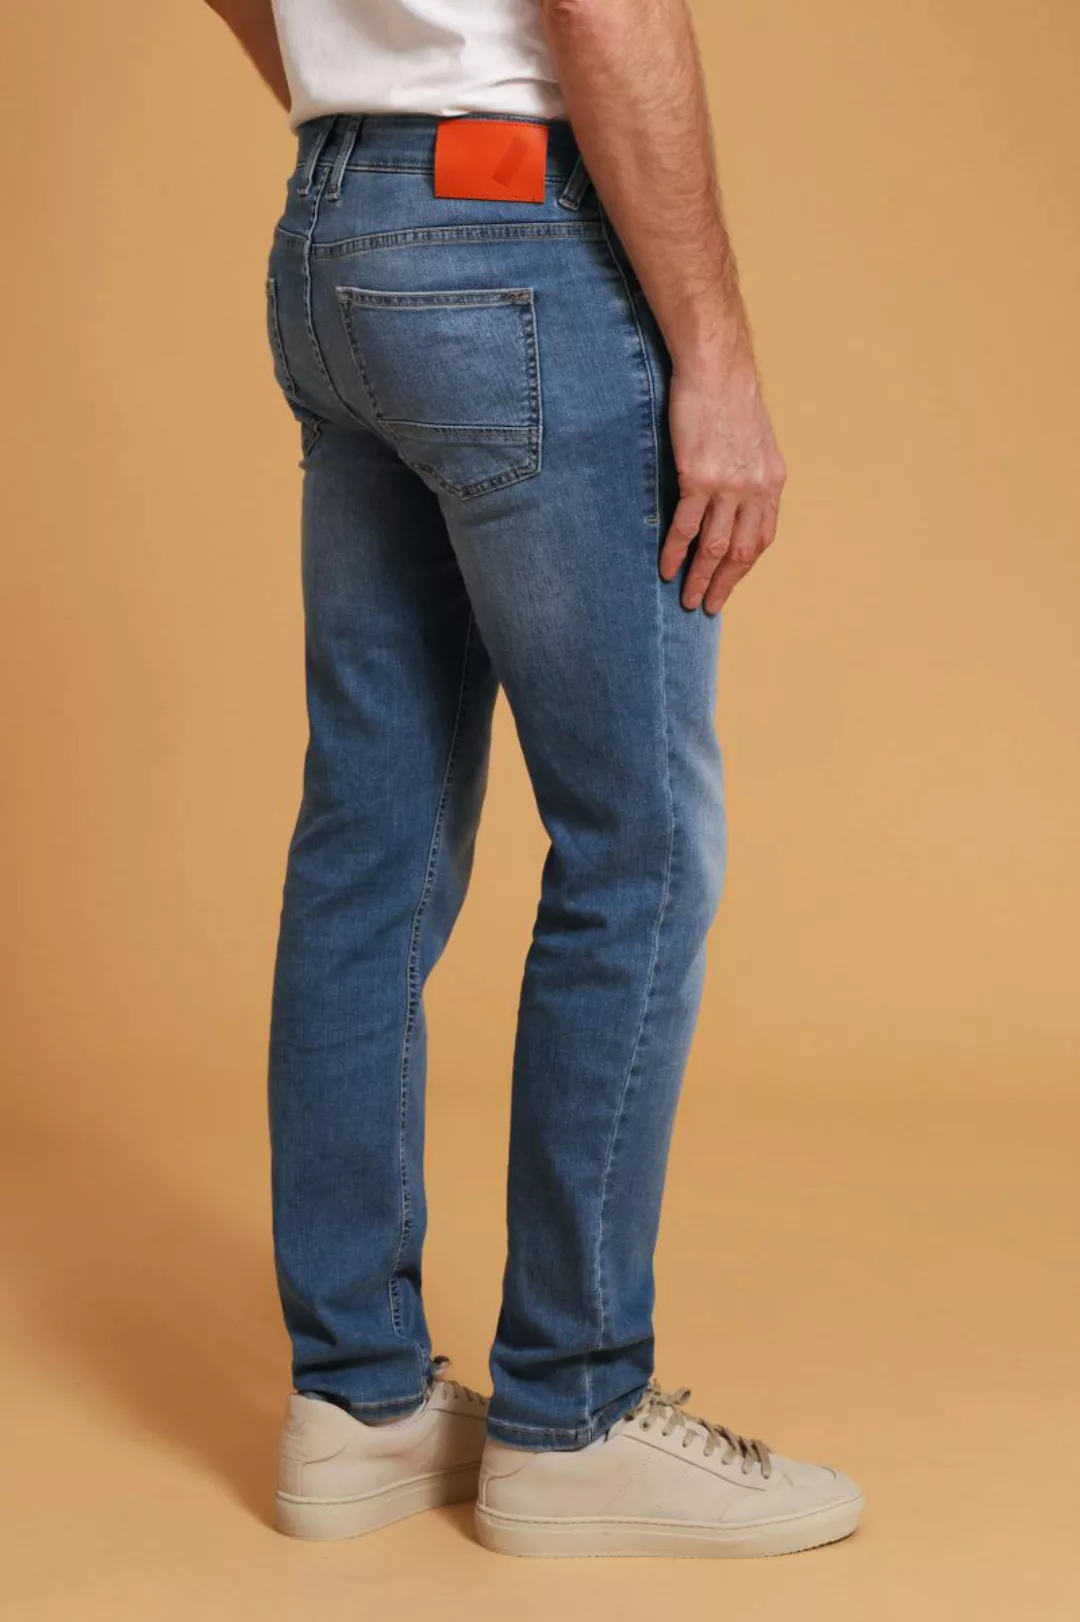 Suitable Jeans Blau - Größe W 31 - L 34 günstig online kaufen